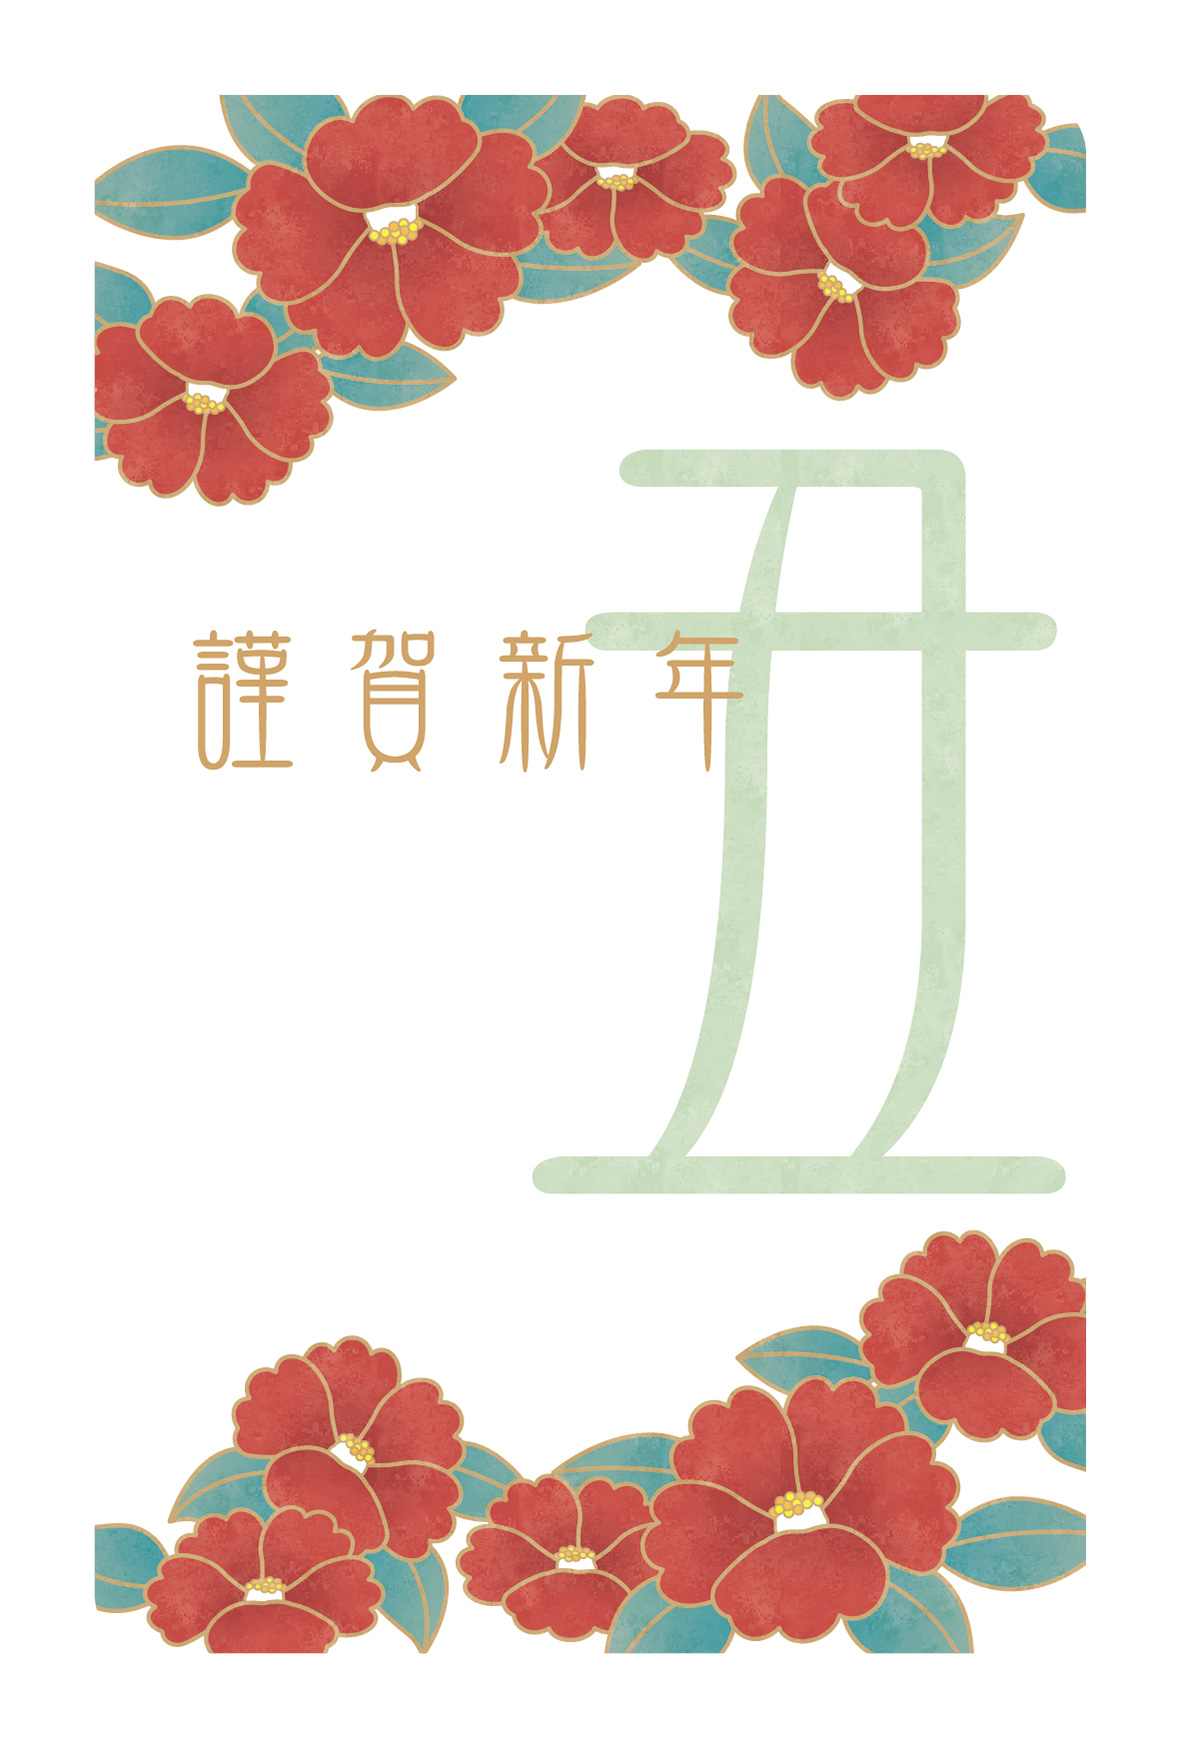 年賀状 丑年 椿の花が主役の年賀状デザイン 年賀状21無料イラスト素材集